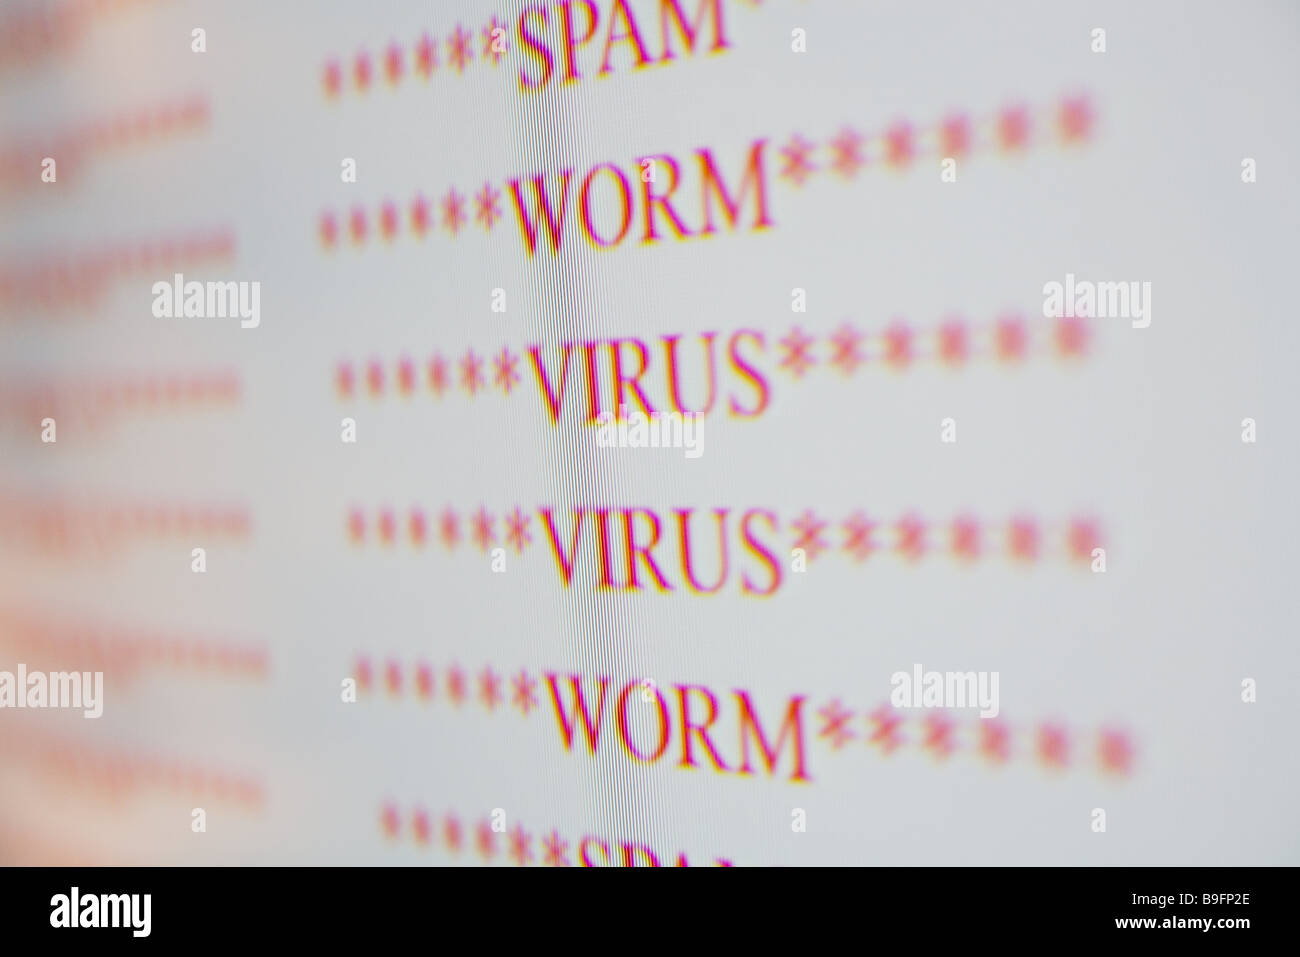 Computer schermo Virenwarnung computer a schermo suggerimento di avvertimento virus worm Spam computer computer virus-worm simbolo di annunci Foto Stock